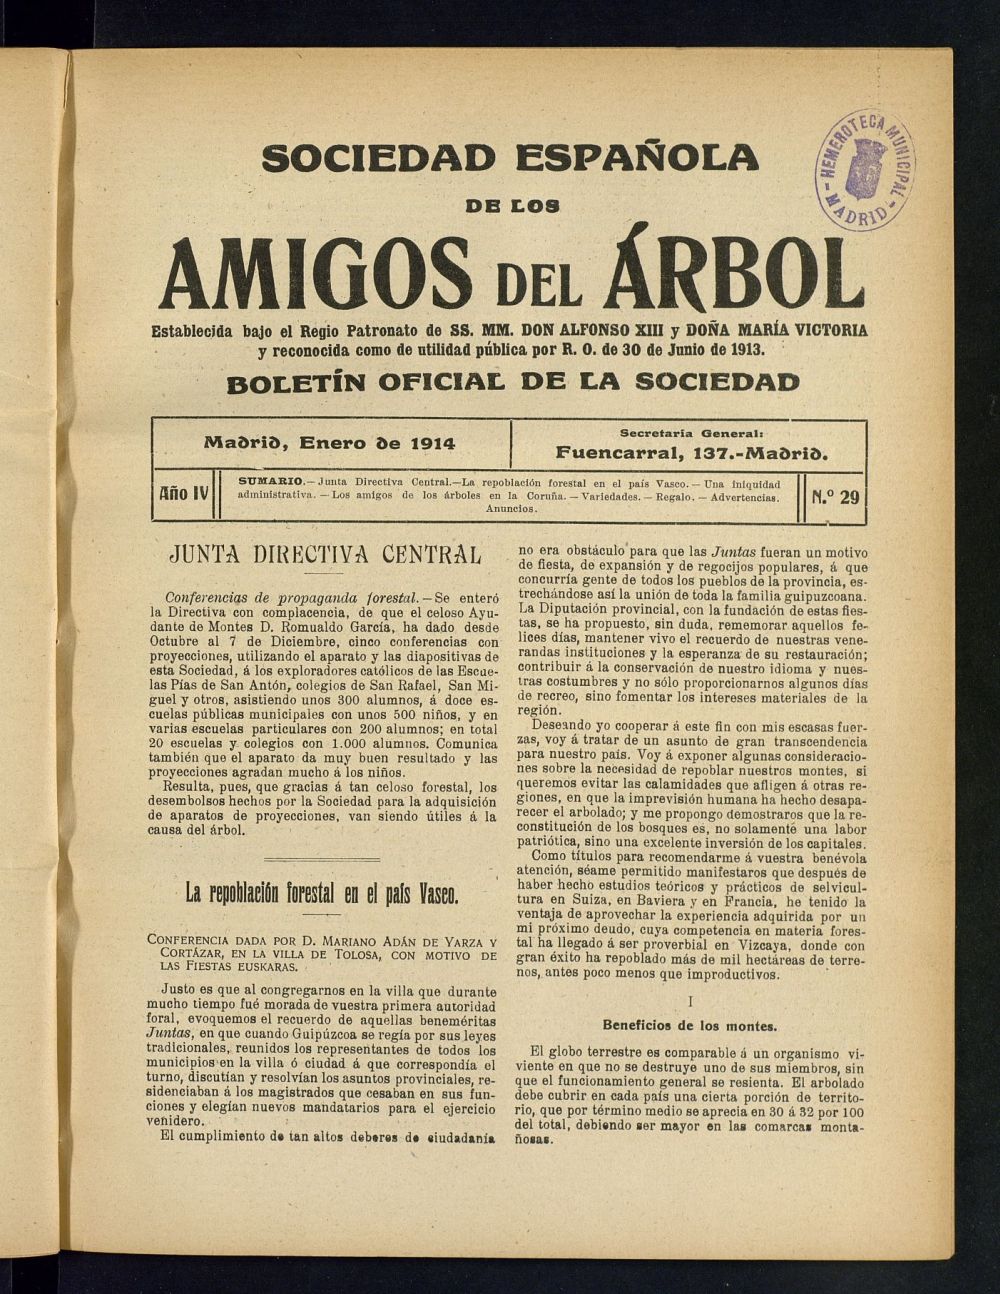 Boletn Comisin organizadora de la Sociedad Espaola de los amigos del rbol de enero de 1914